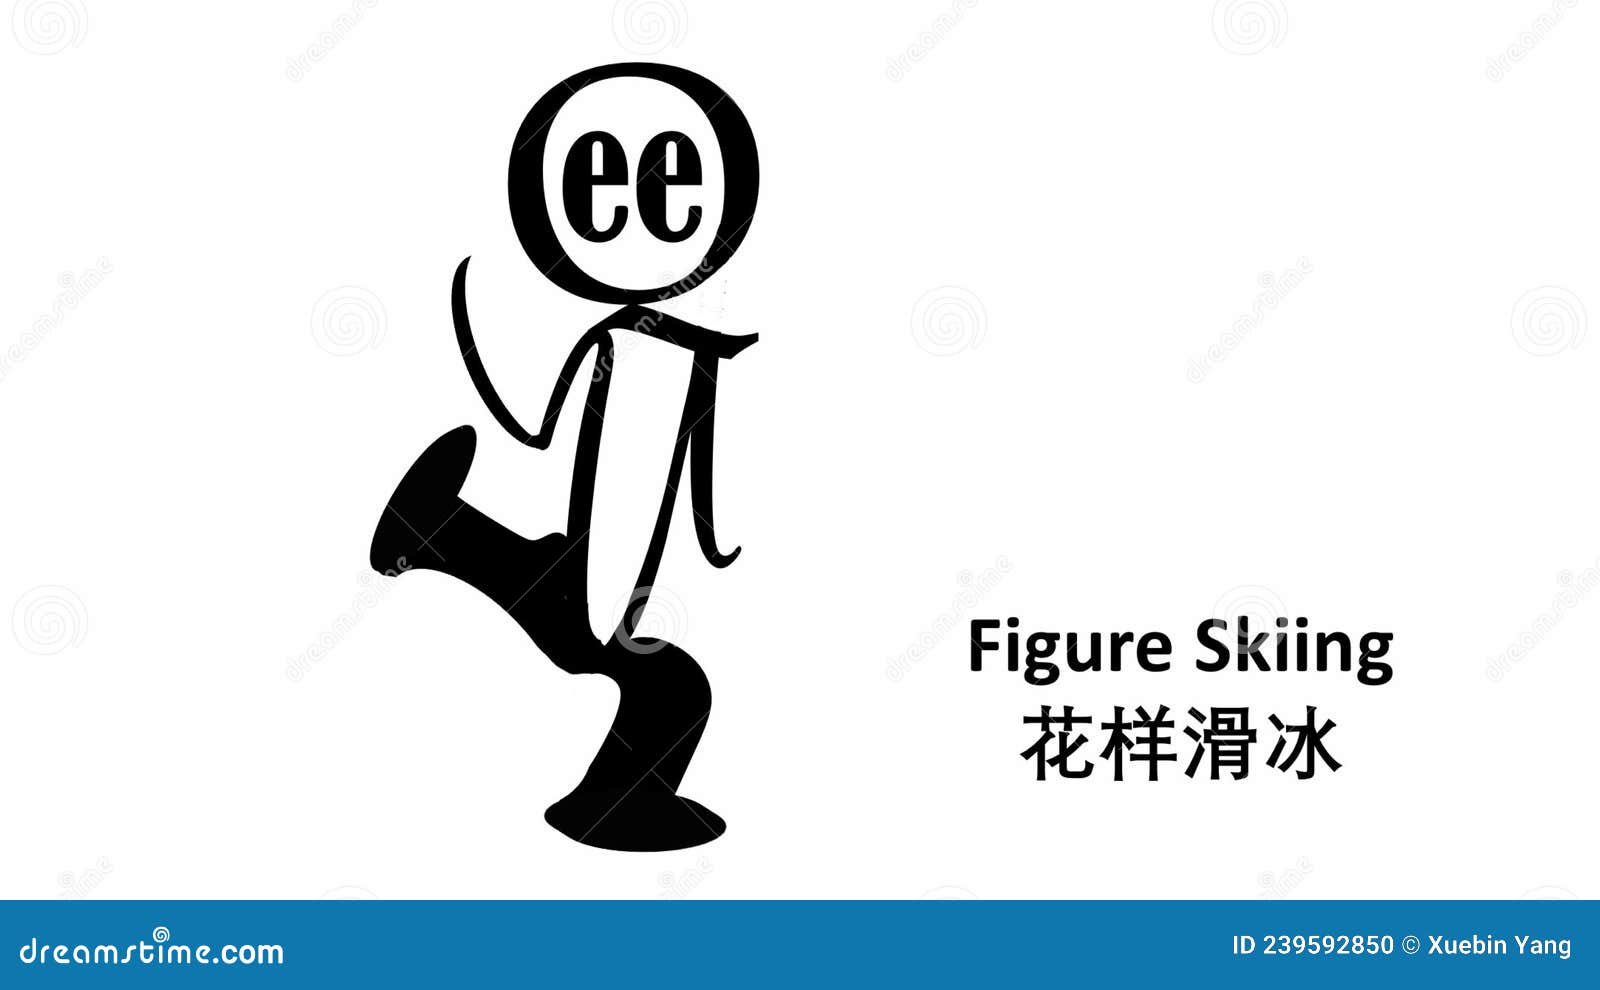 Cartoon Illustration Logo Design Winter Olympic Games Figure Skiing Figure Skiing Winter Olympic Games 239592850 